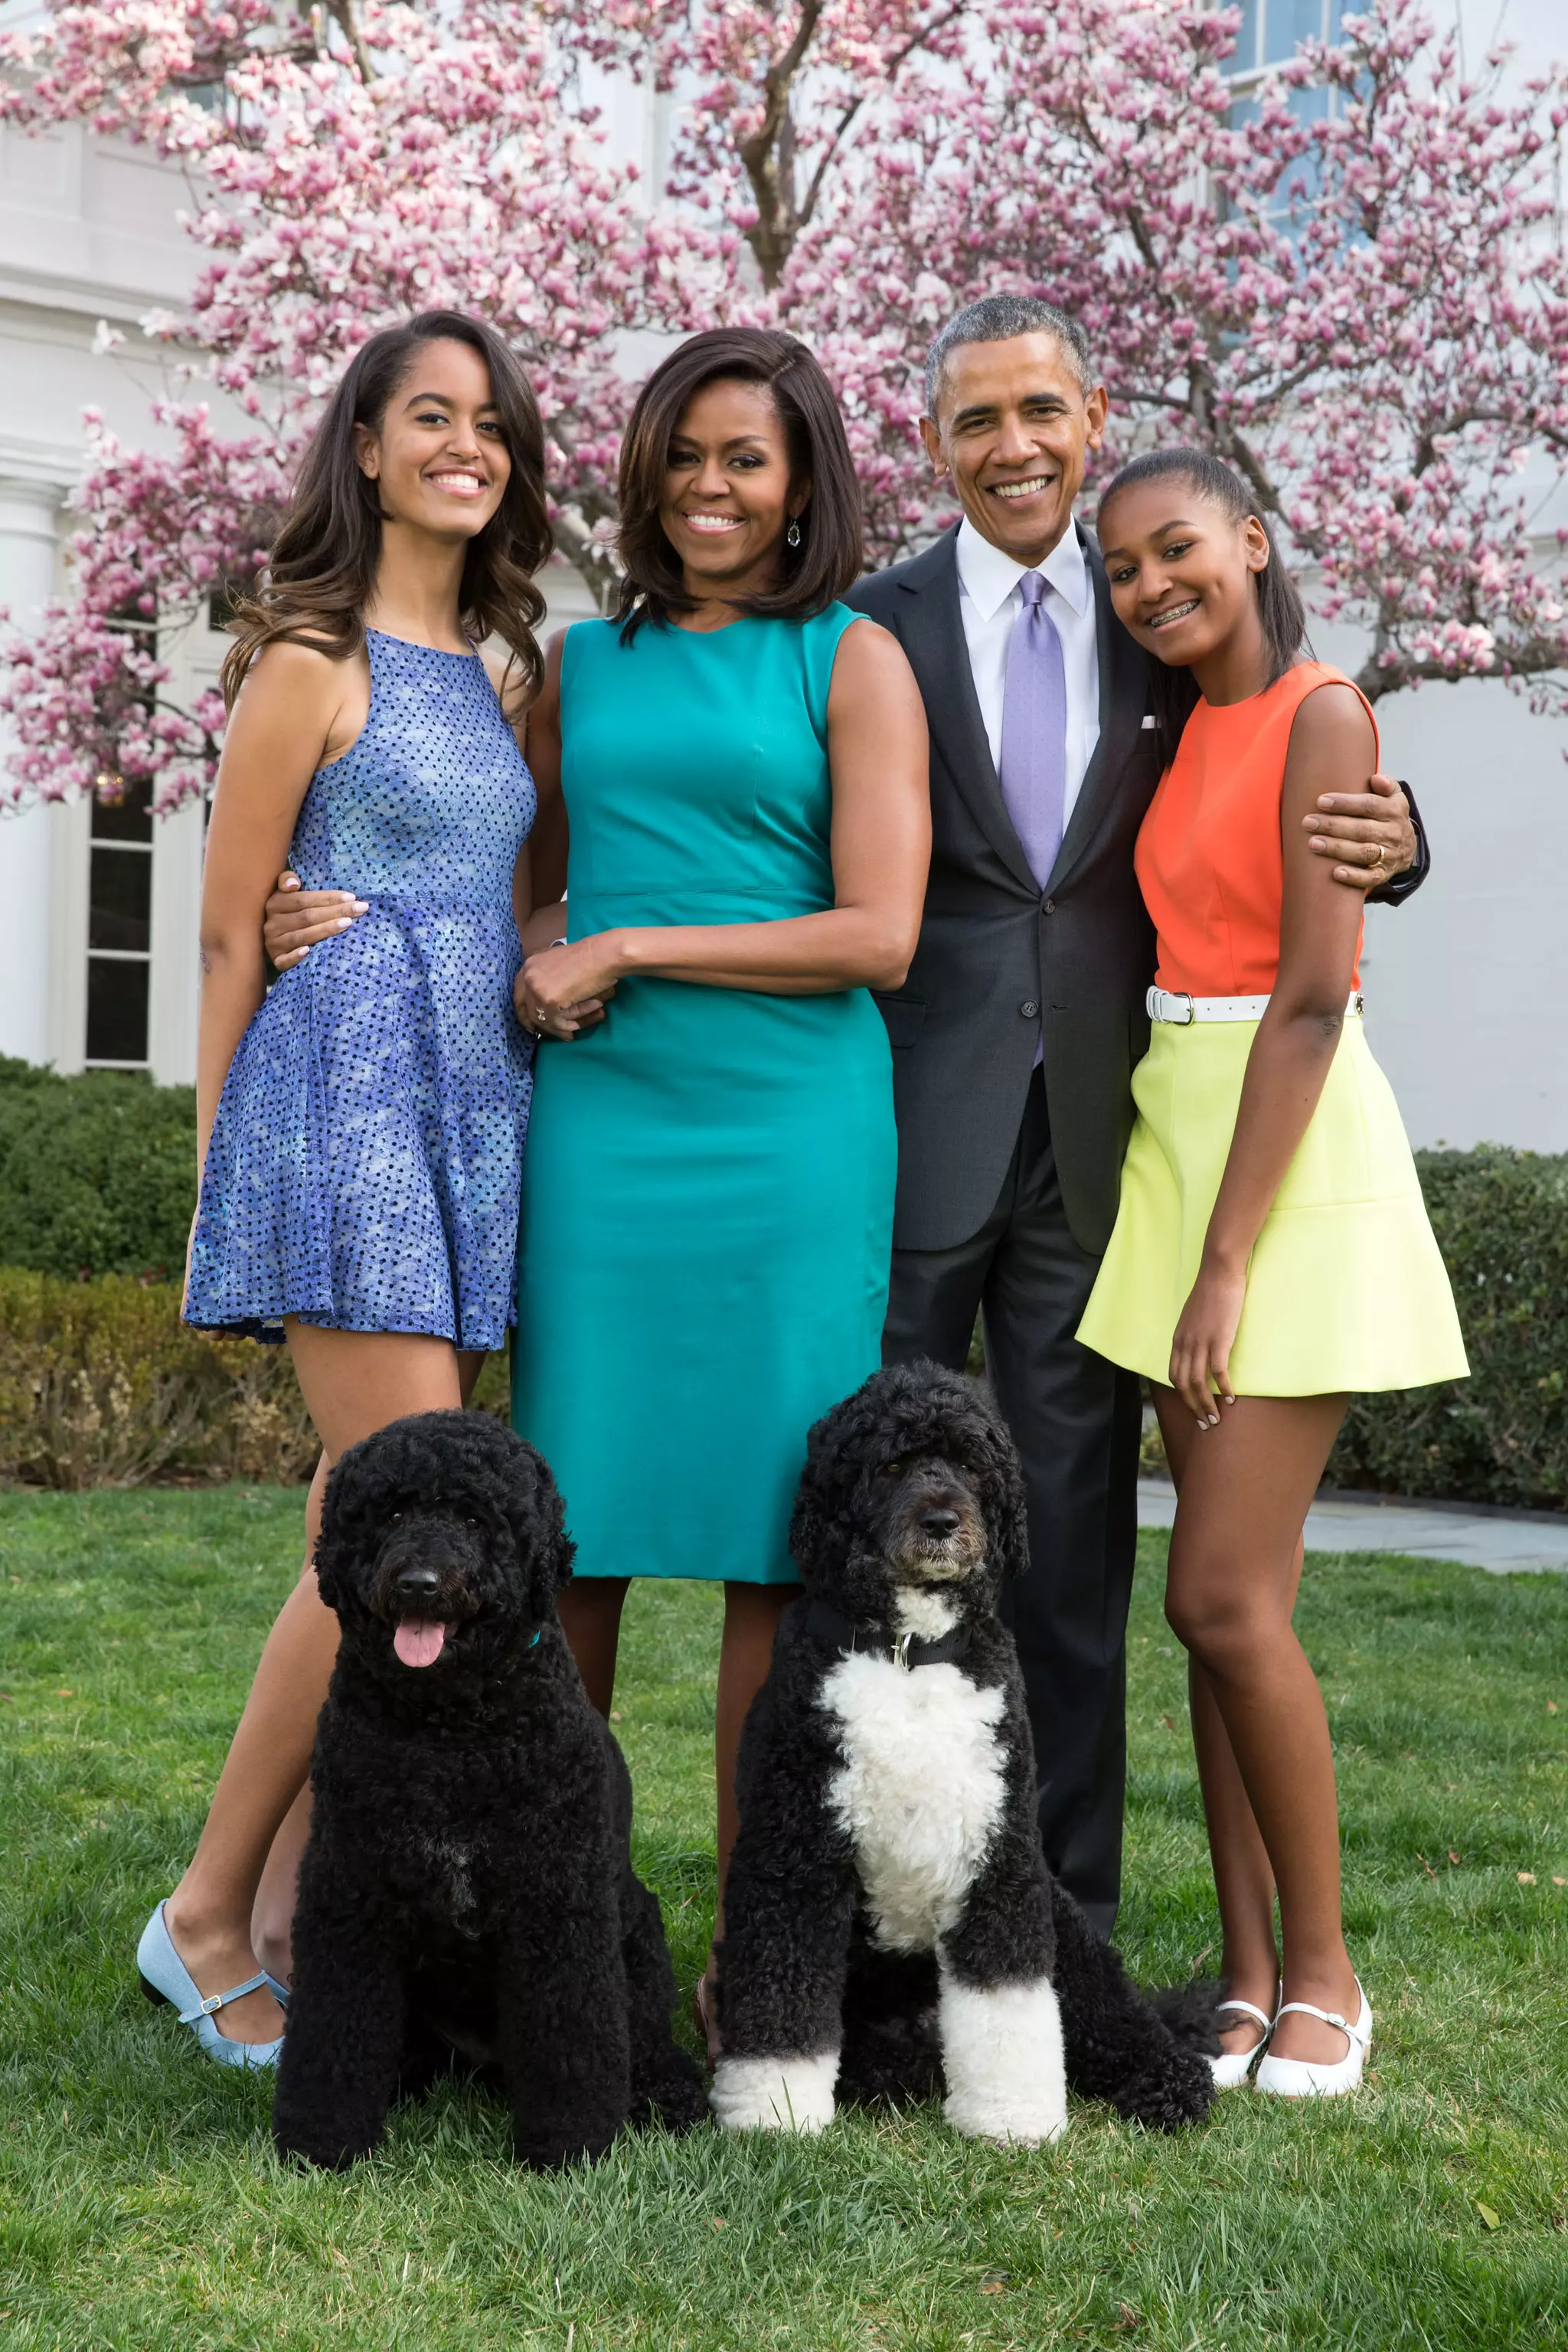 Малия Обама, Мишель Обама, Барак Обама и Саша Обама